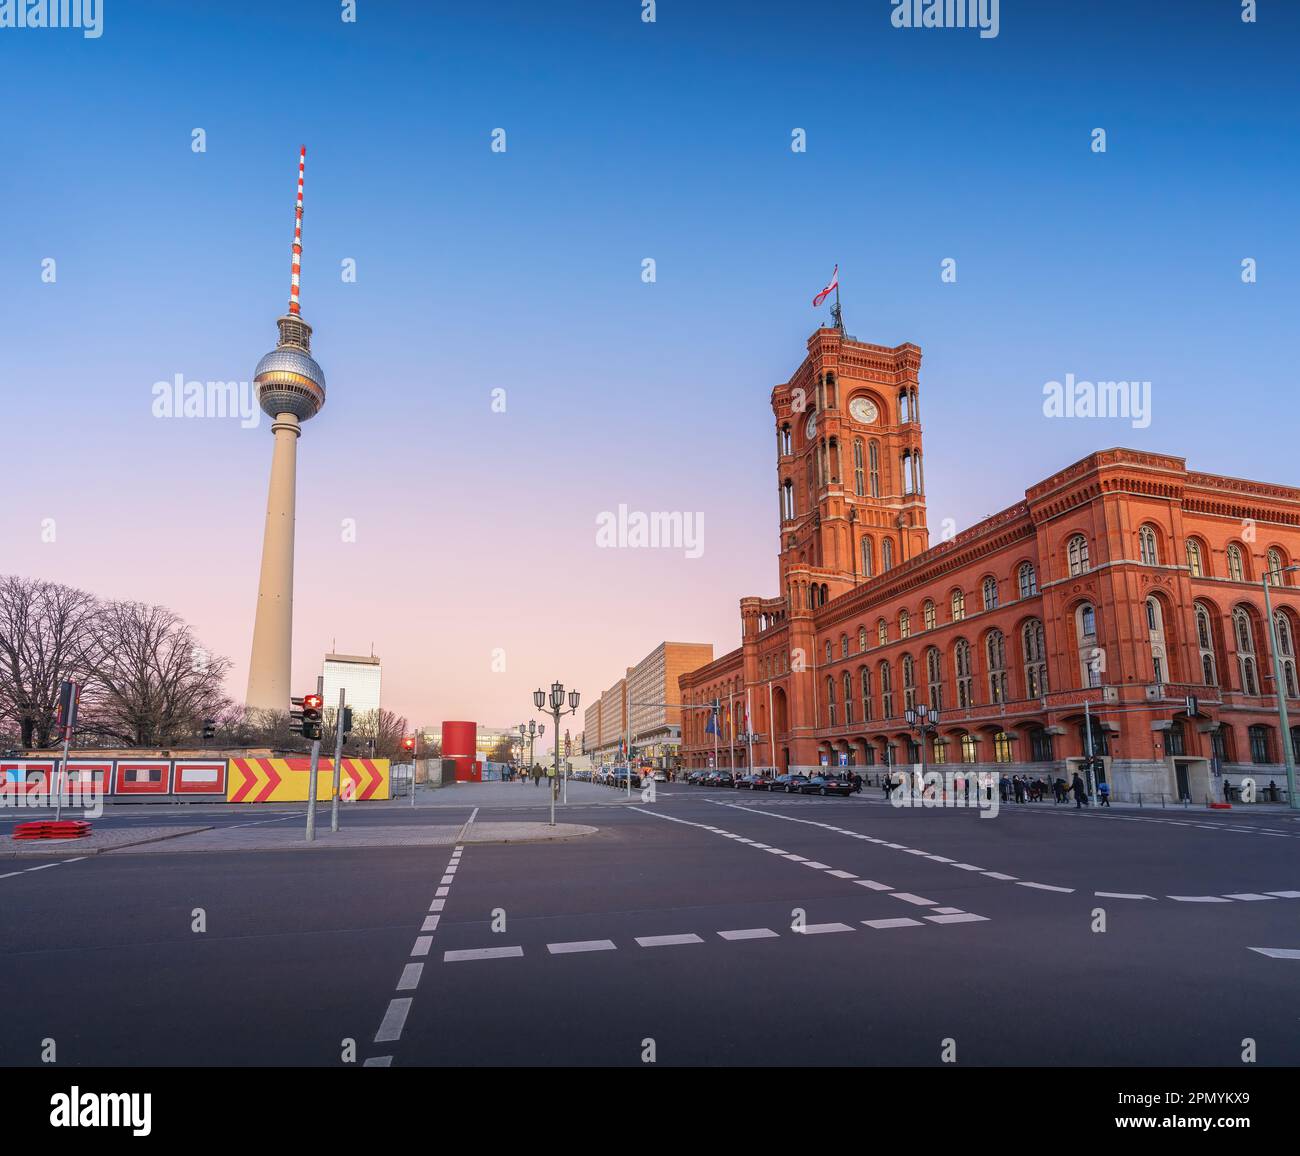 Hôtel de ville de Berlin (Rotes Rathaus) et tour de télévision (Fernsehturm) au coucher du soleil - Berlin, Allemagne Banque D'Images